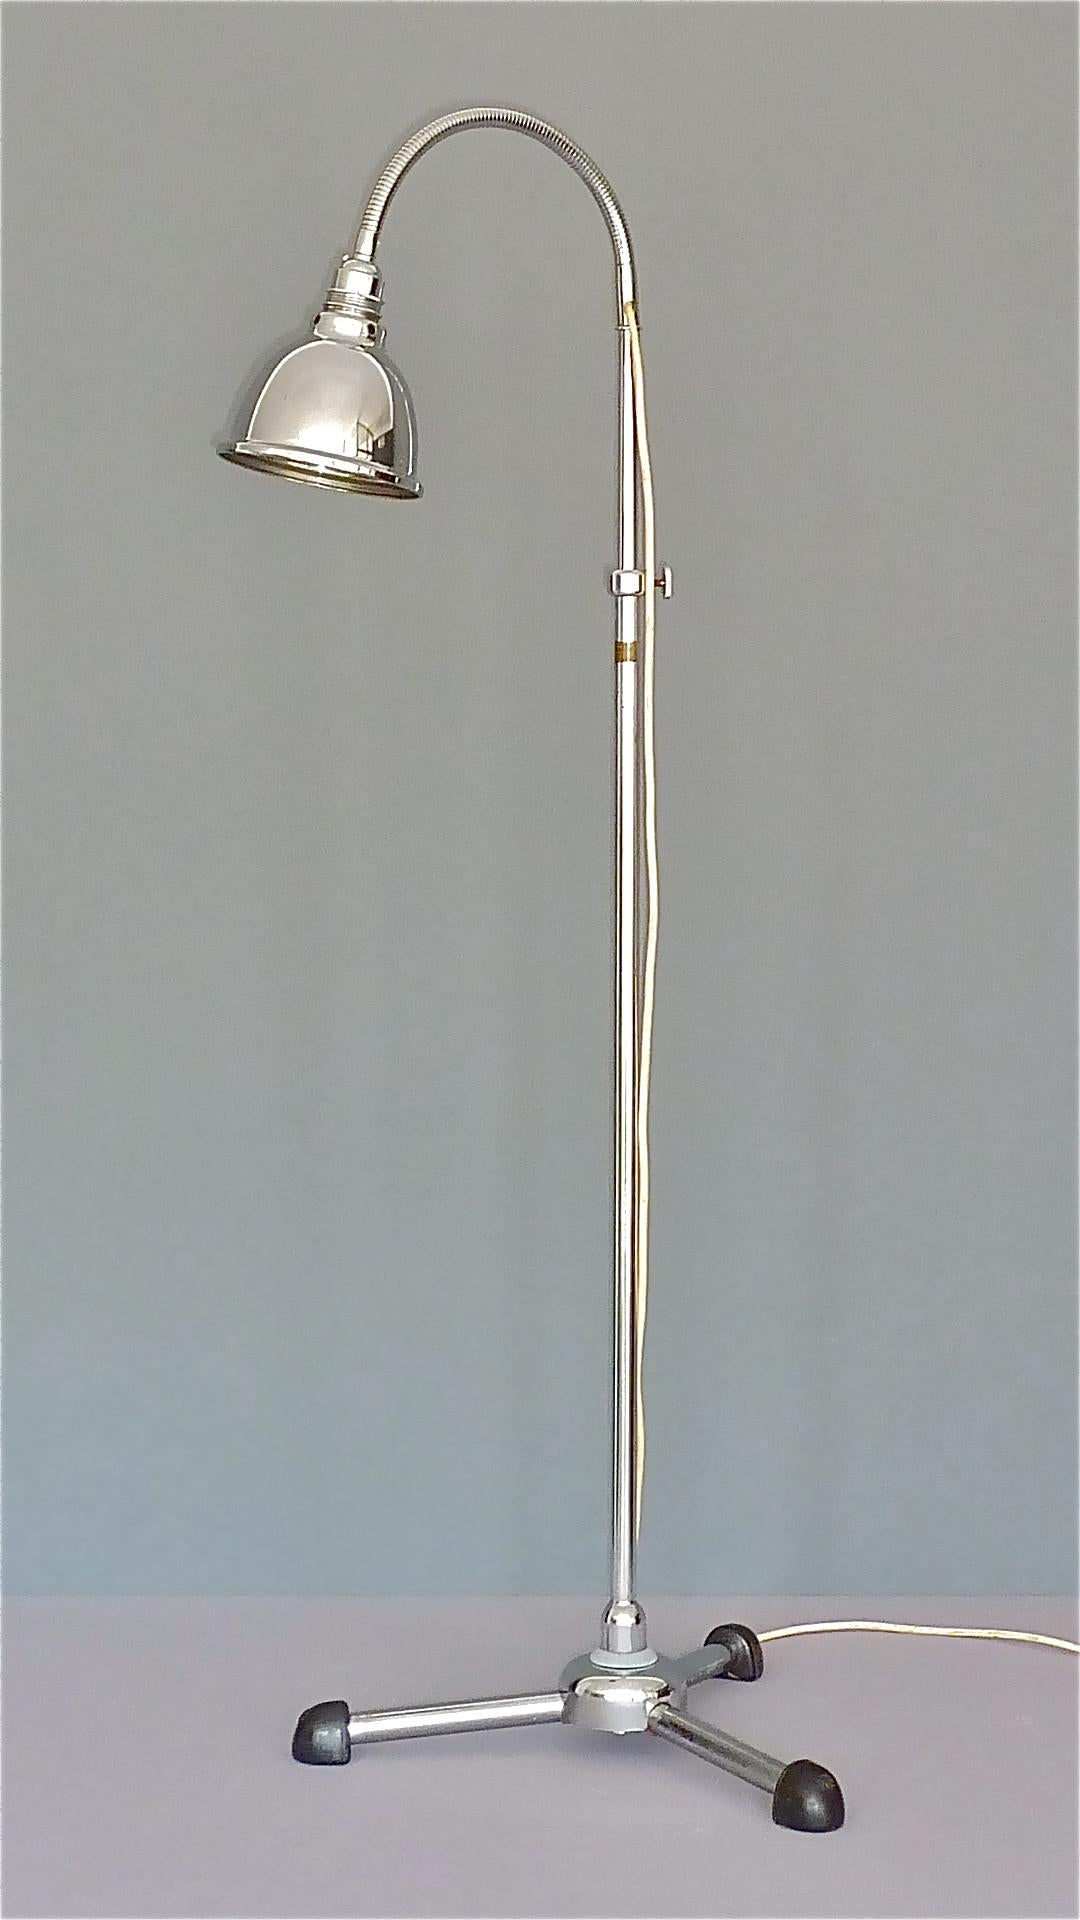 Rare lampadaire Bauhaus à col de cygne flexible et base tripode, conçu par Christian Dell et exécuté par Maquet, Allemagne, vers les années 1930. Lancée à l'origine comme lampe médicale avec une ampoule infrarouge, elle peut être utilisée comme